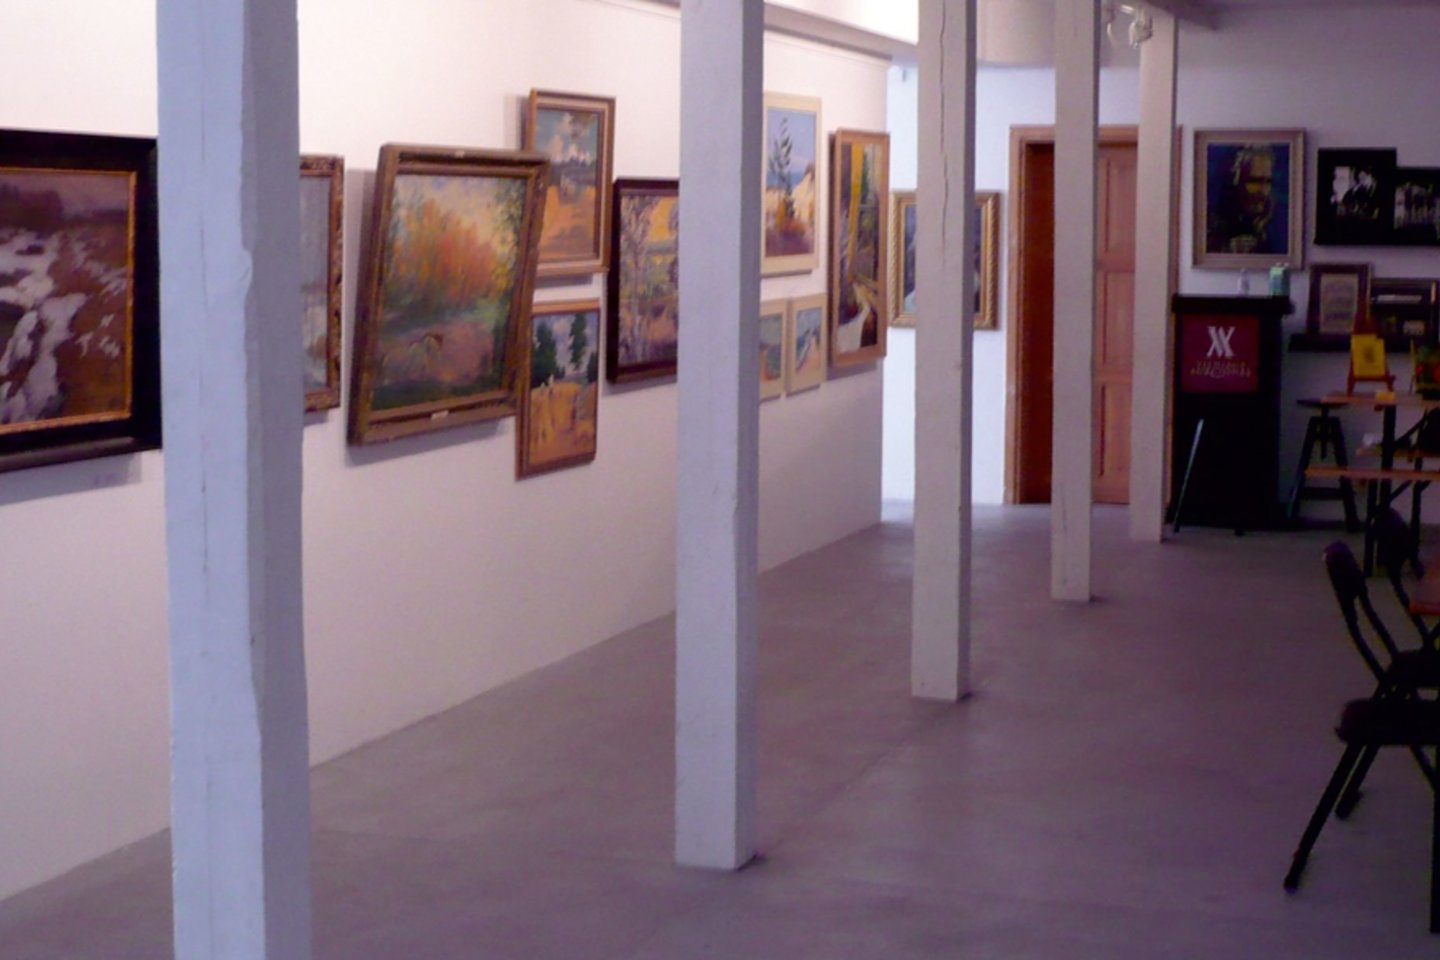  Vilniaus aukciono namų organizuojamas meno kūrinių aukcionas vyks Palangoje.<br> Rengėjų nuotr.